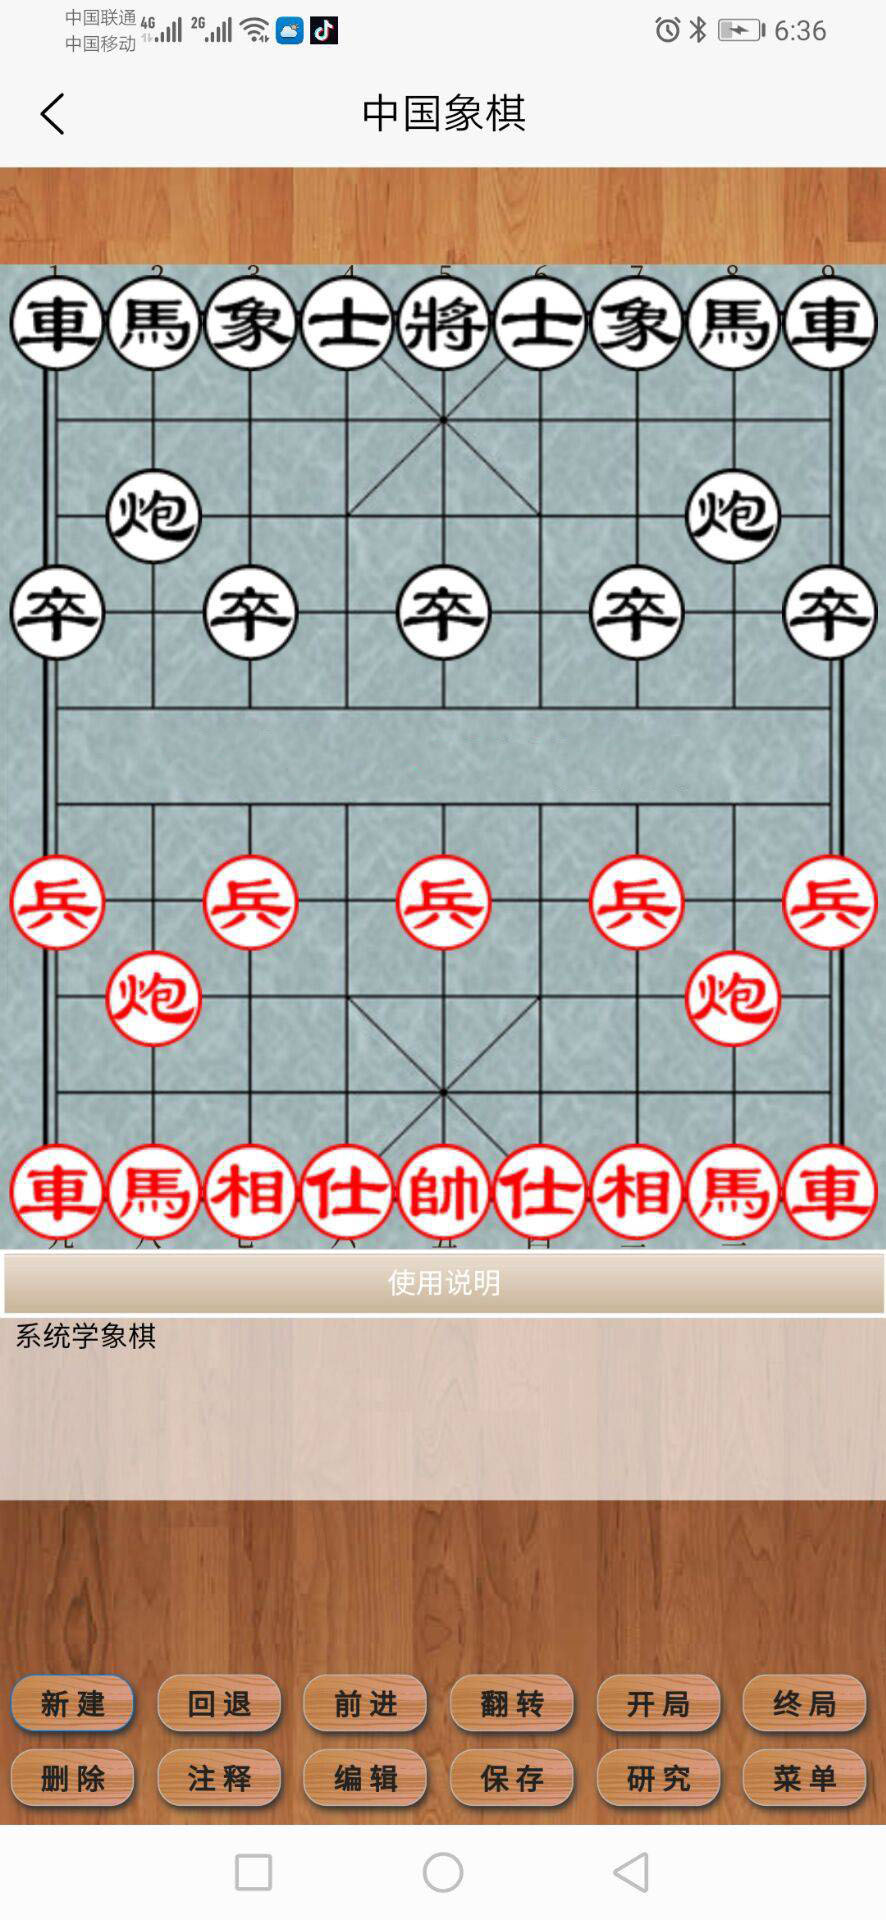 王子中国象棋软件